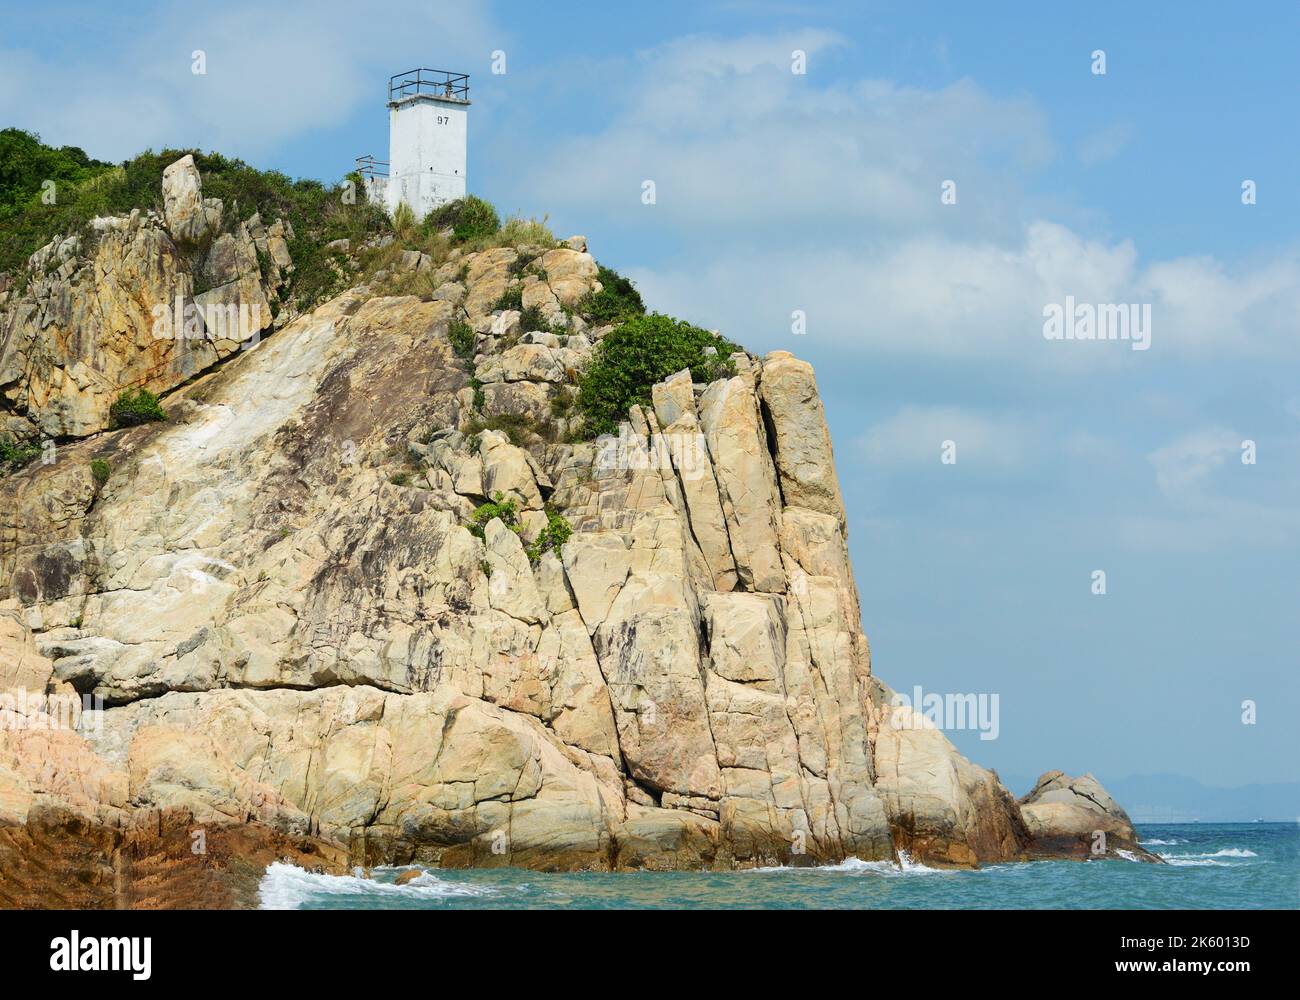 La belle côte rocheuse dans la partie sud de l'île de Lamma à Hong Kong. Banque D'Images